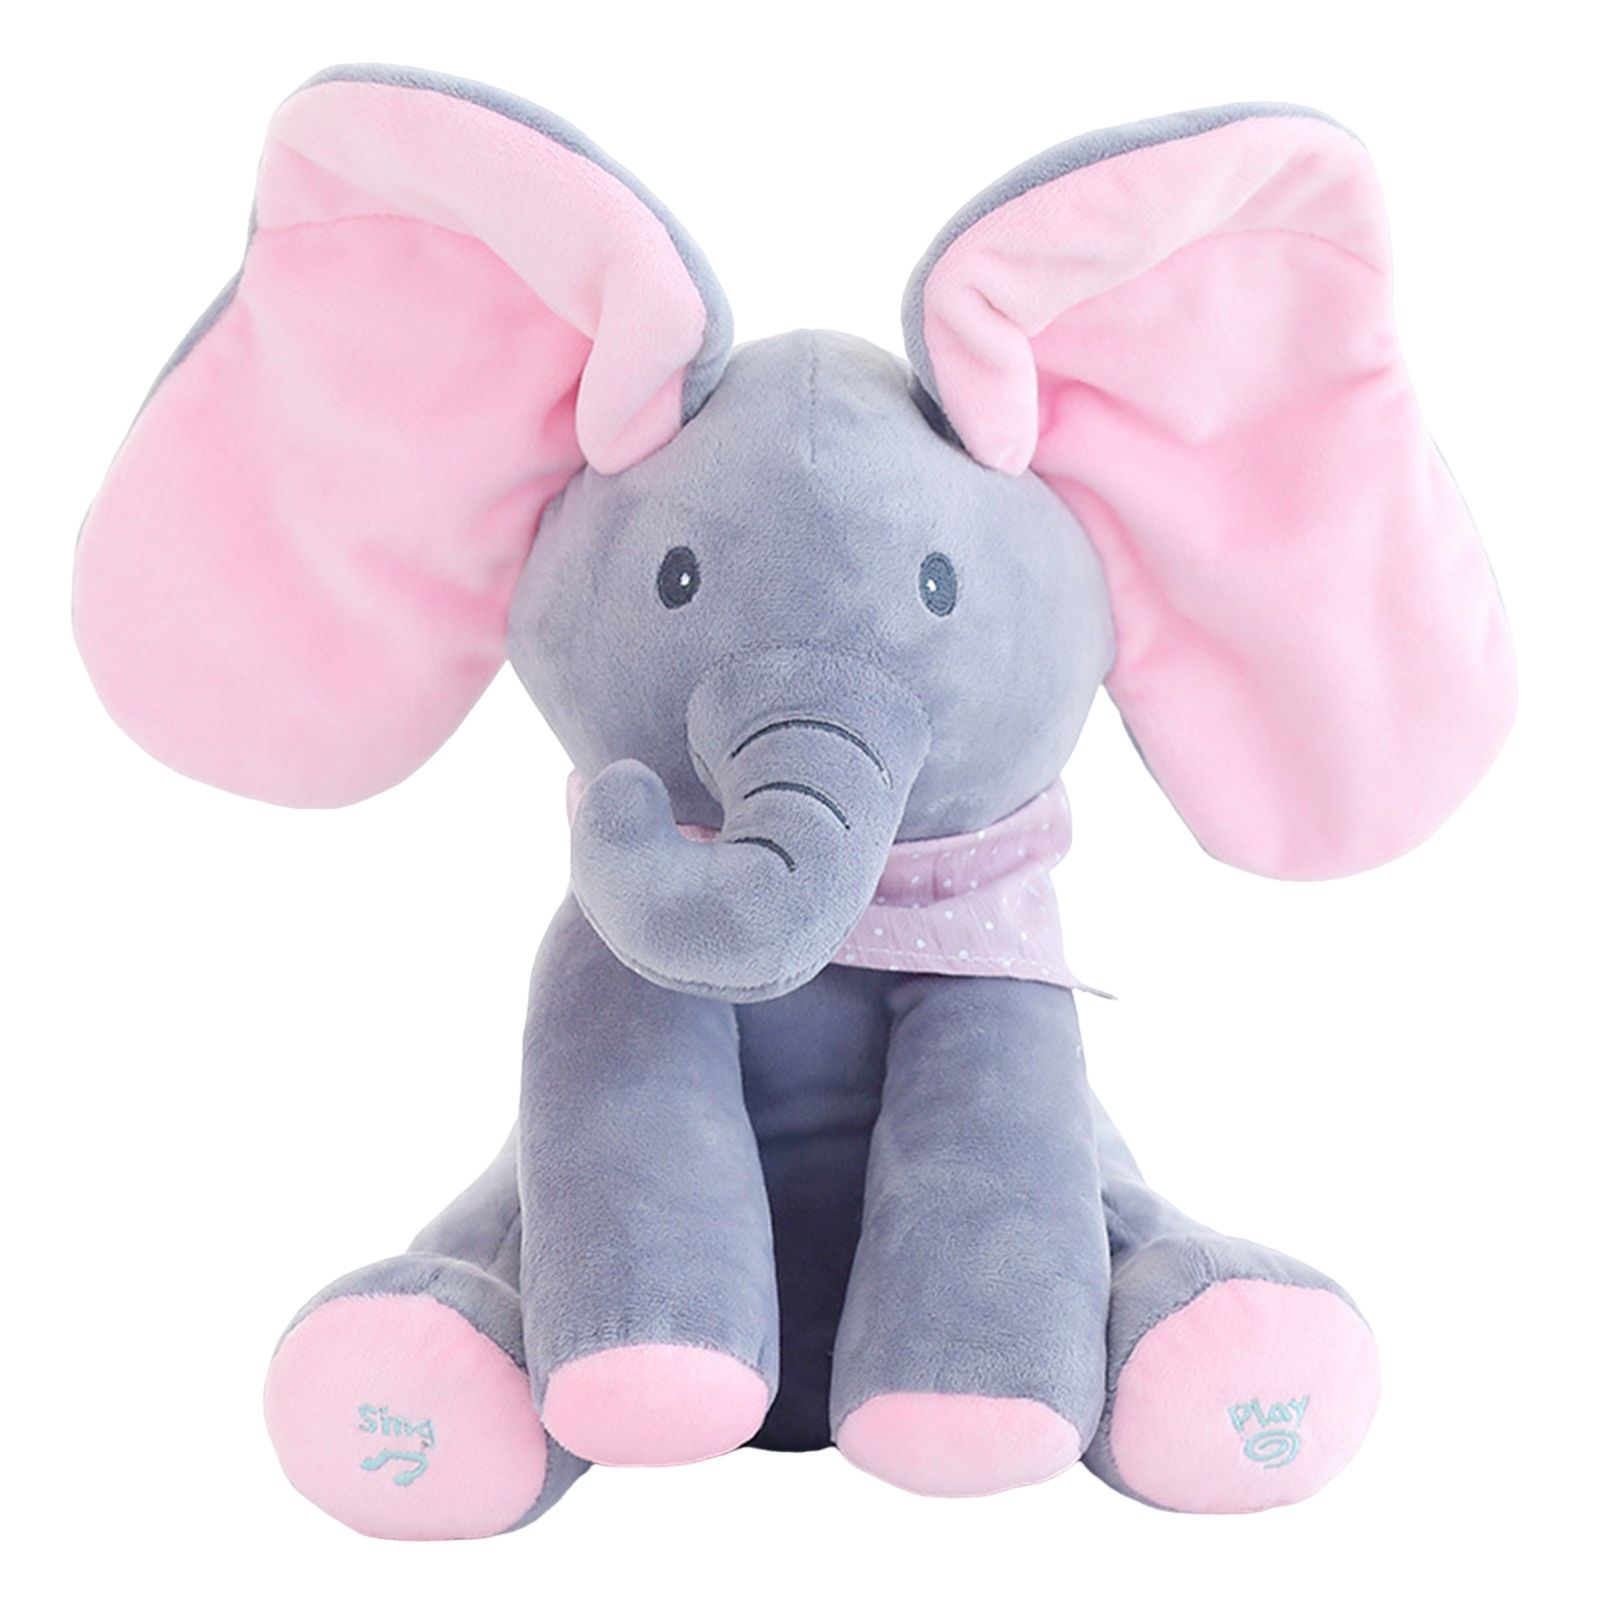 Слоненок Элефант игрушка. Интерактивная игрушка слон Дамбо. Интерактивная игрушка слон Лолли,. Слон плюшевый мягкая игрушка.